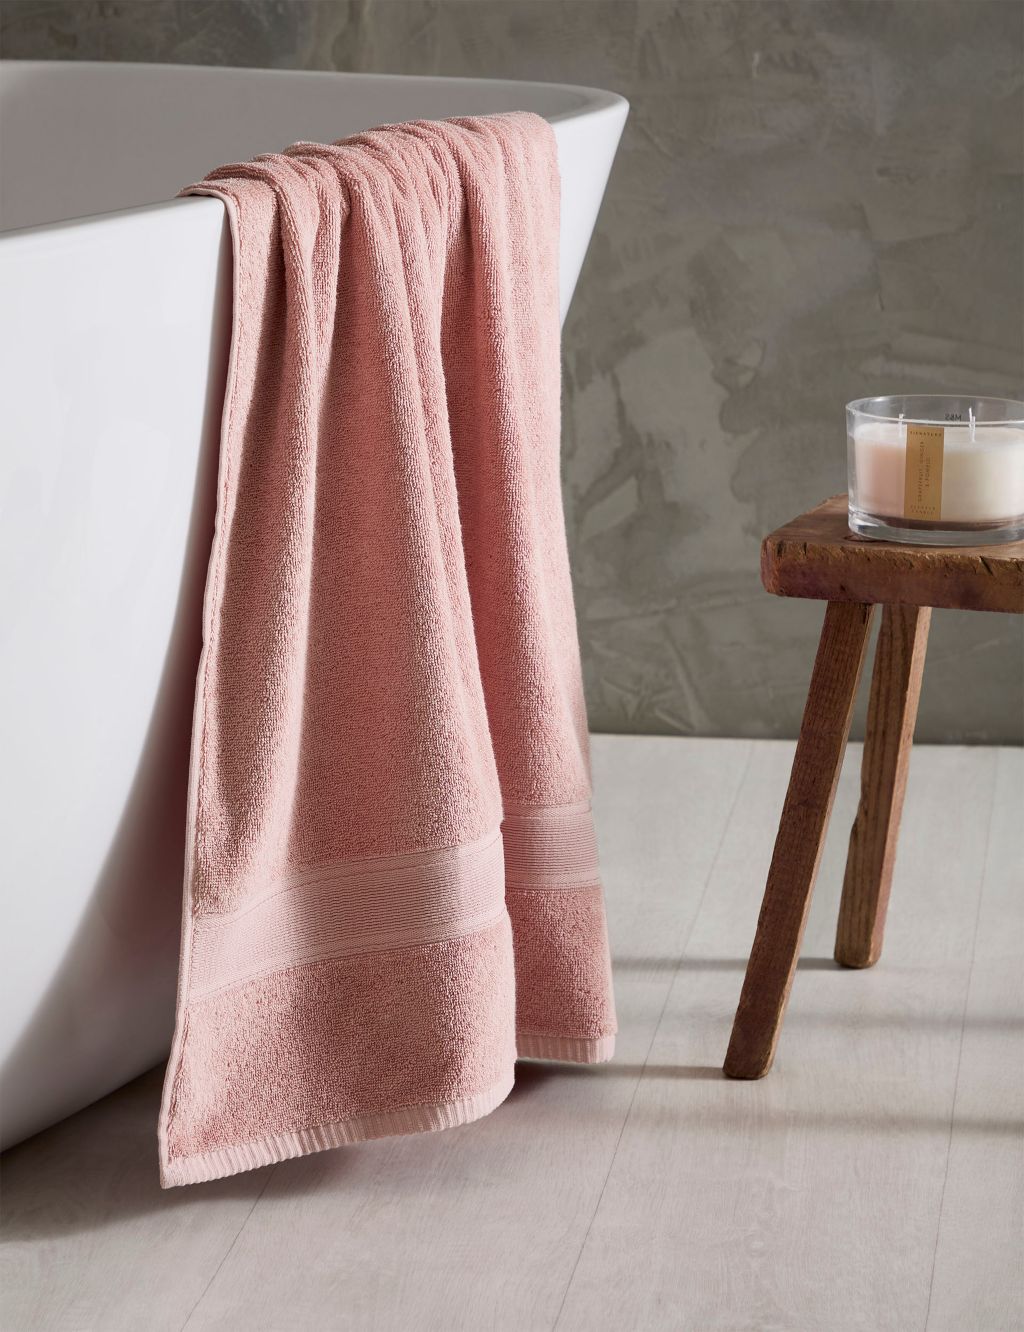 Super Soft Pure Cotton Towel